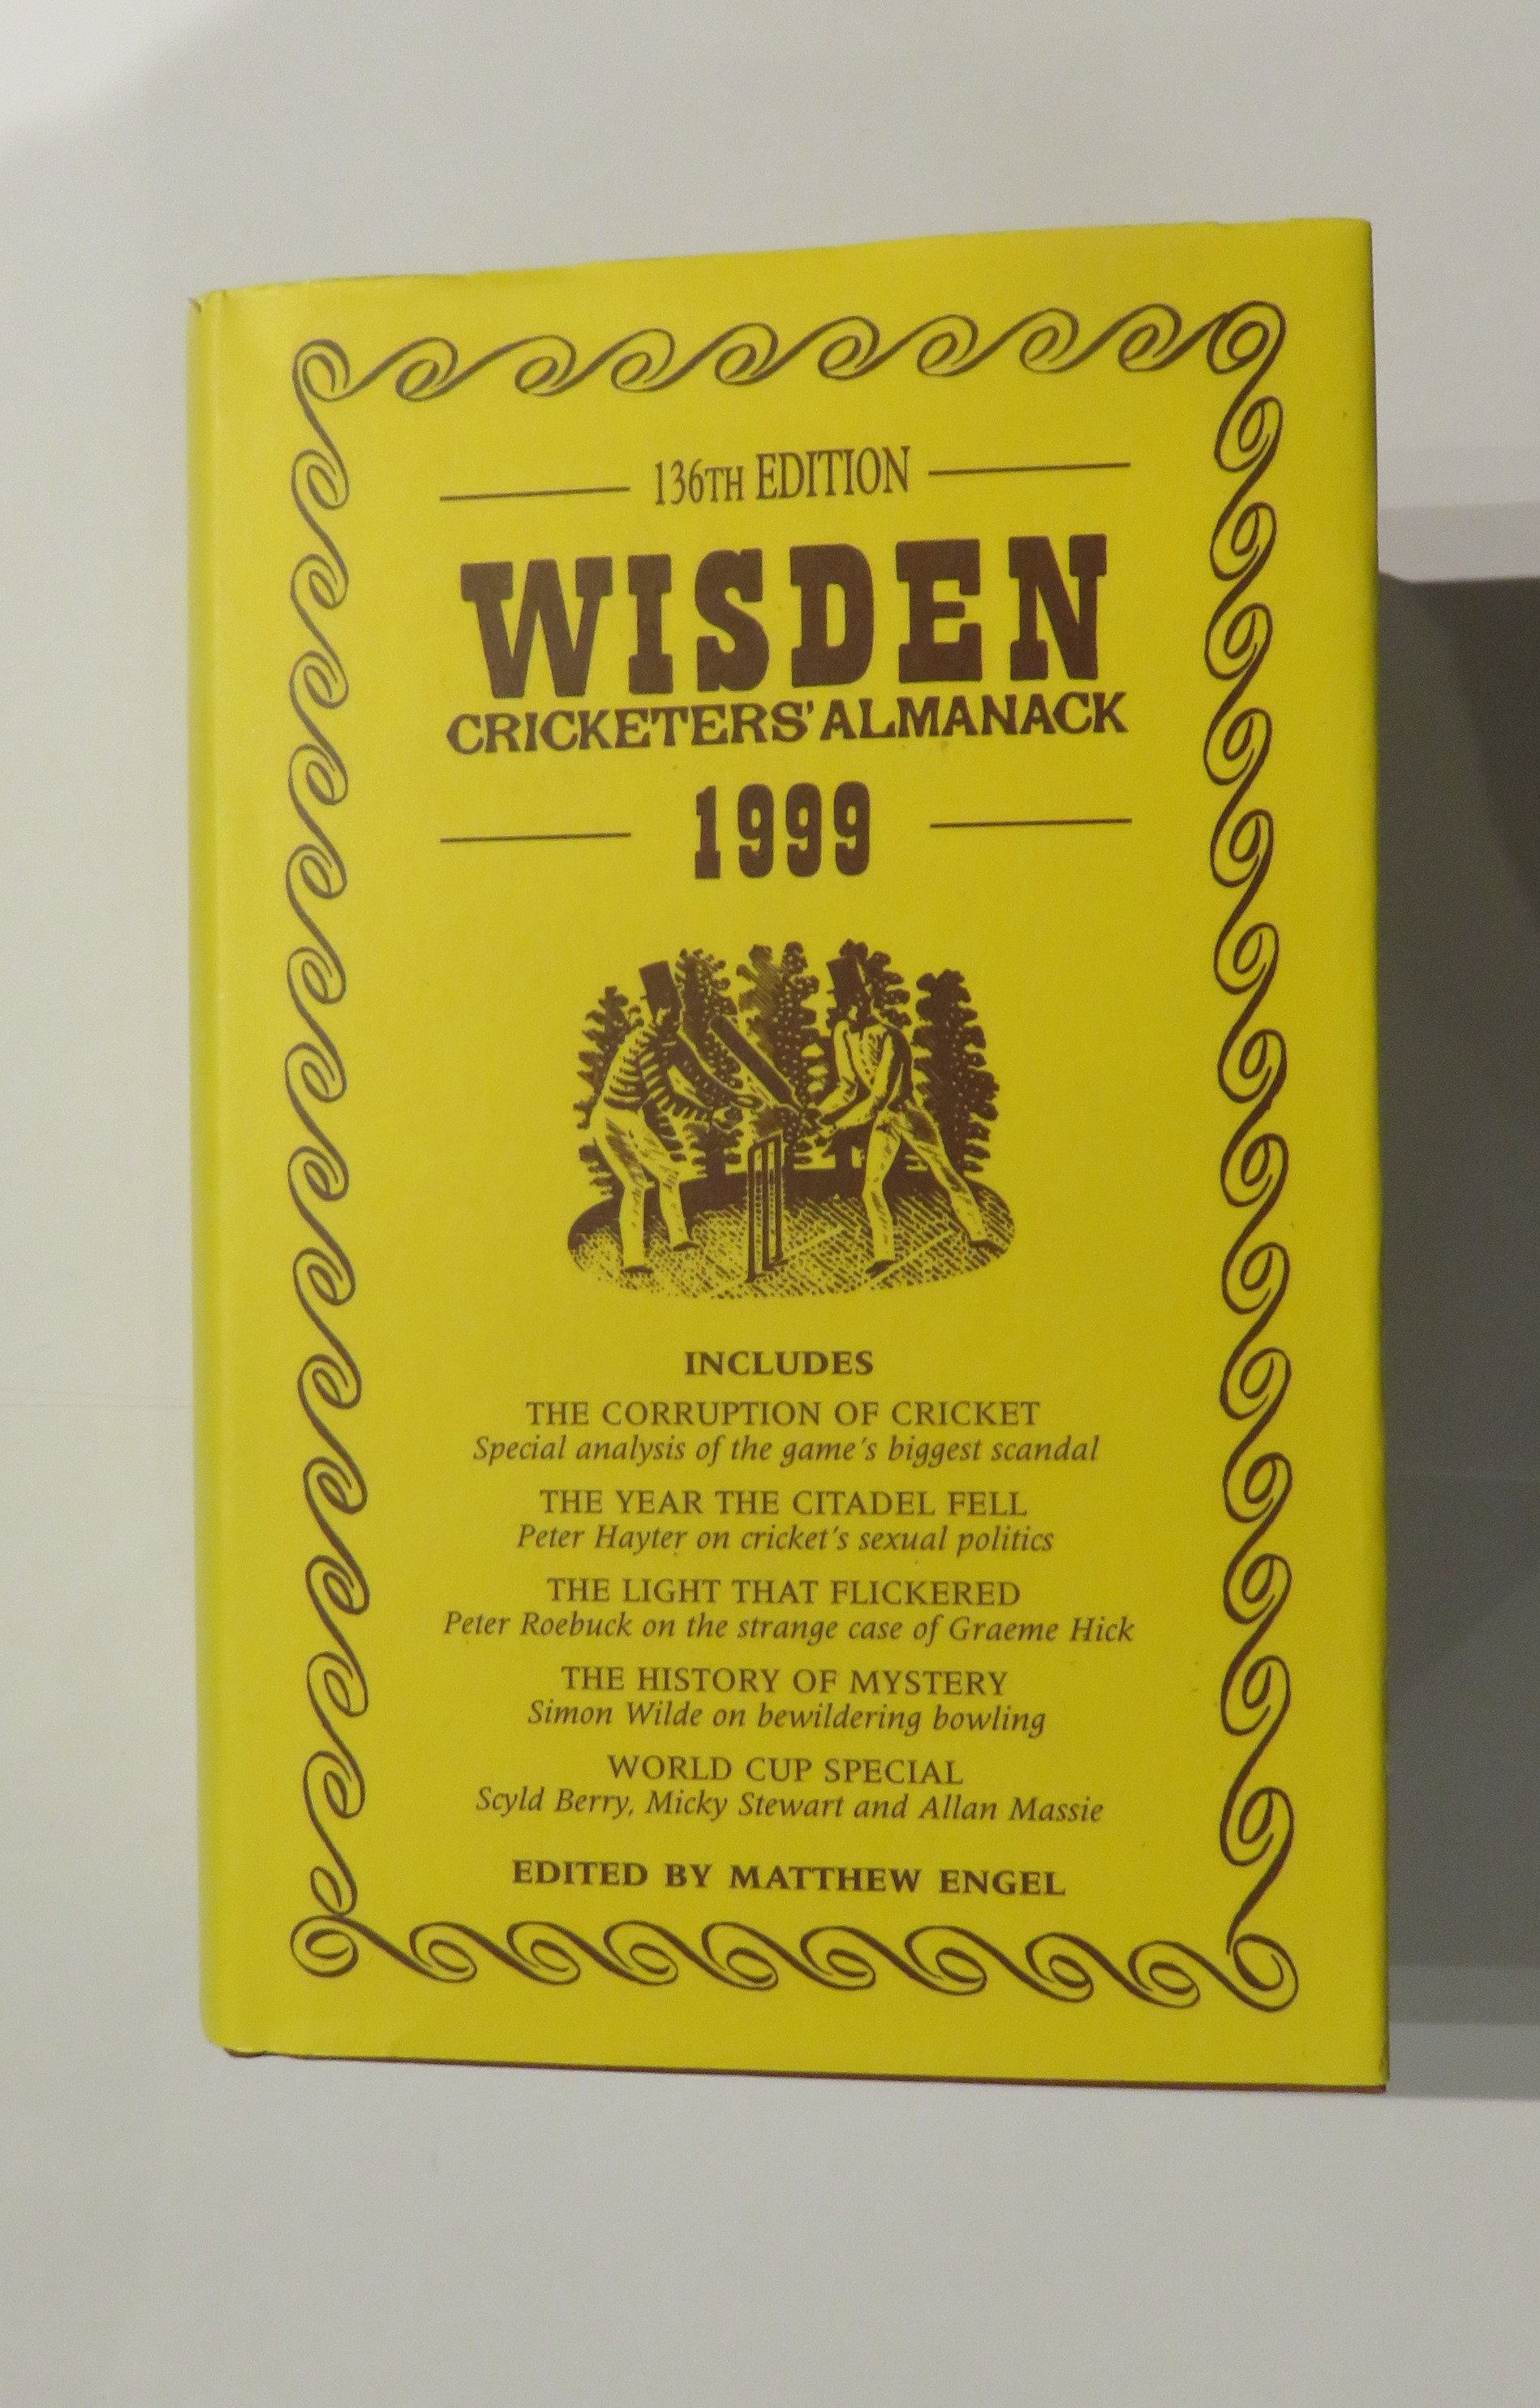 Wisden Cricketers' Almanack 1999